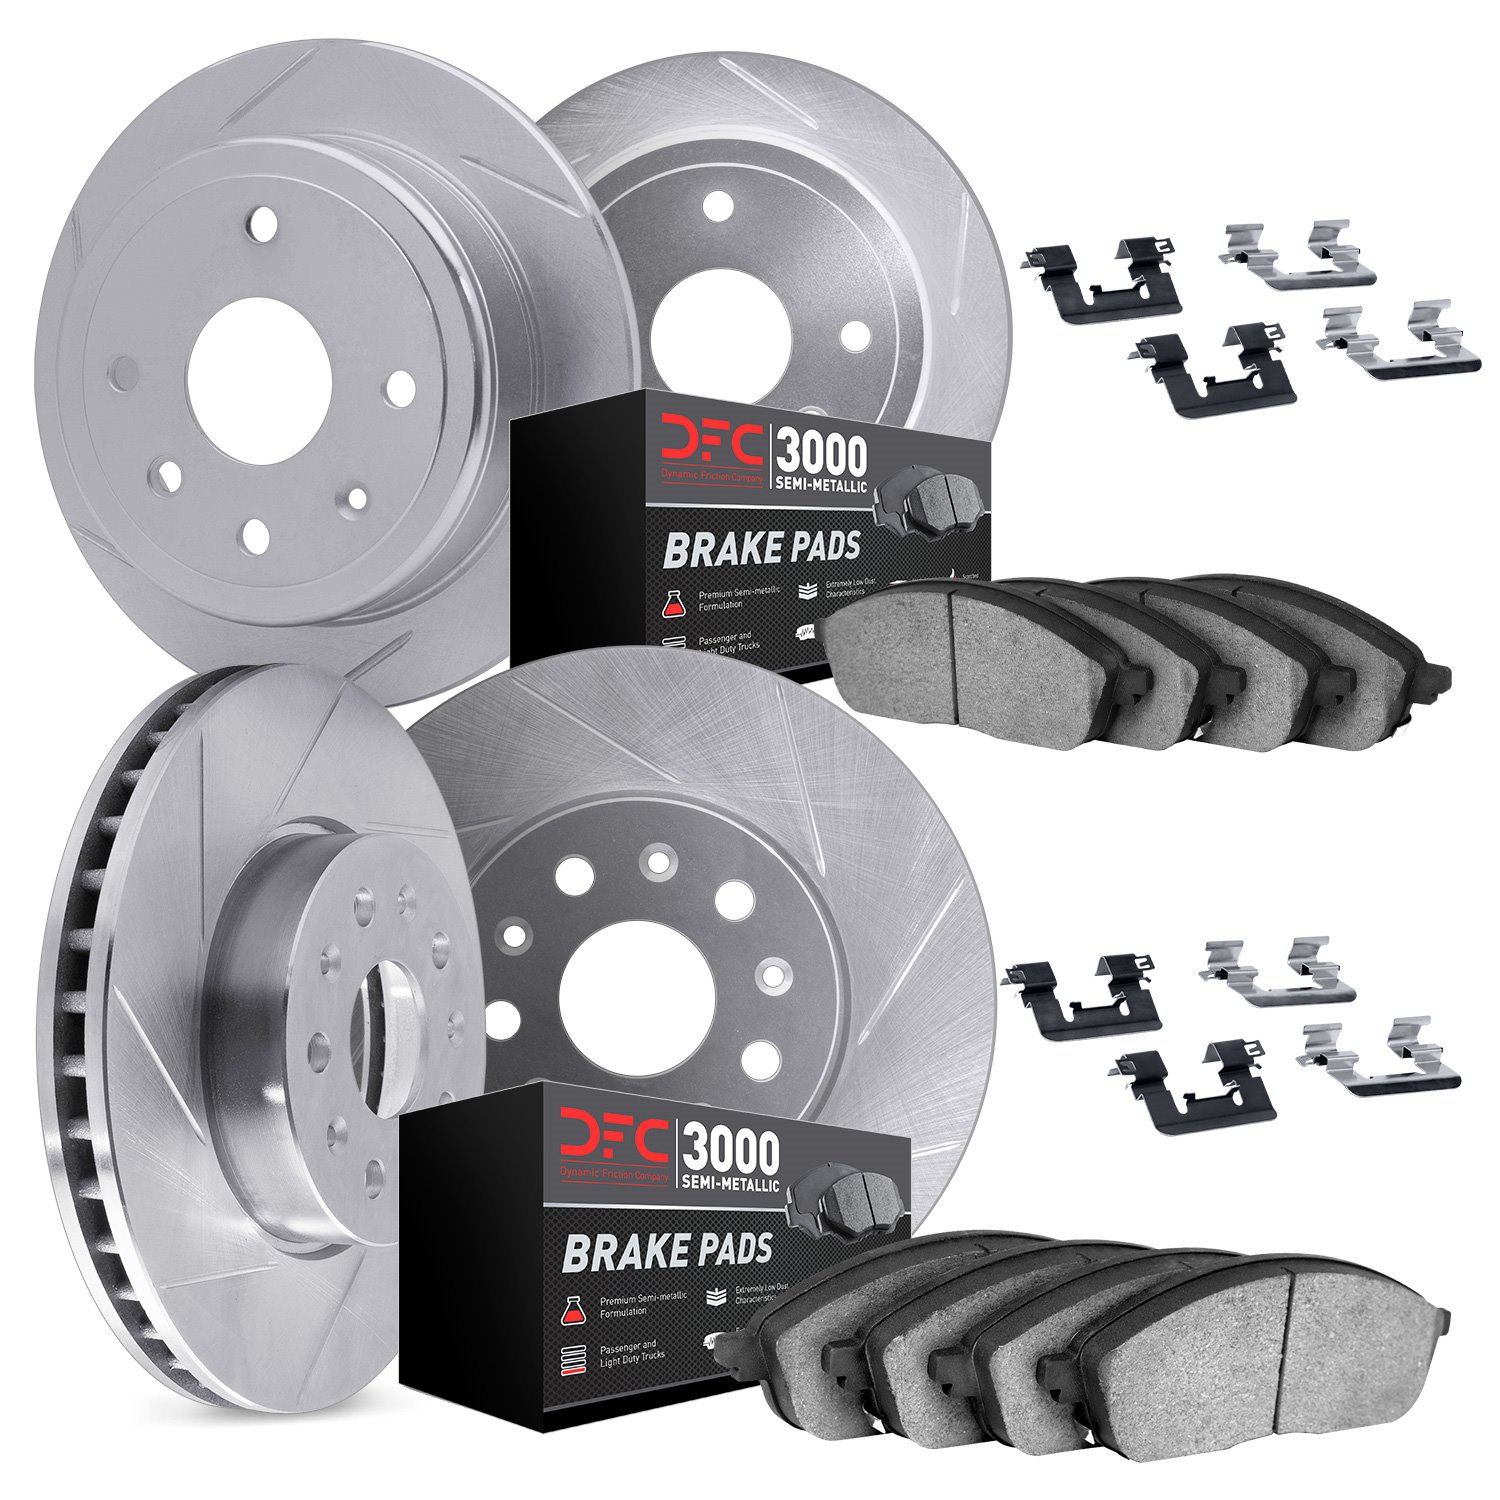 5114-63105 Slotted Brake Rotors with 3000-Series Semi-Metallic Brake Pads Kit & Hardware [Silver], 2006-2012 Mercedes-Benz, Posi